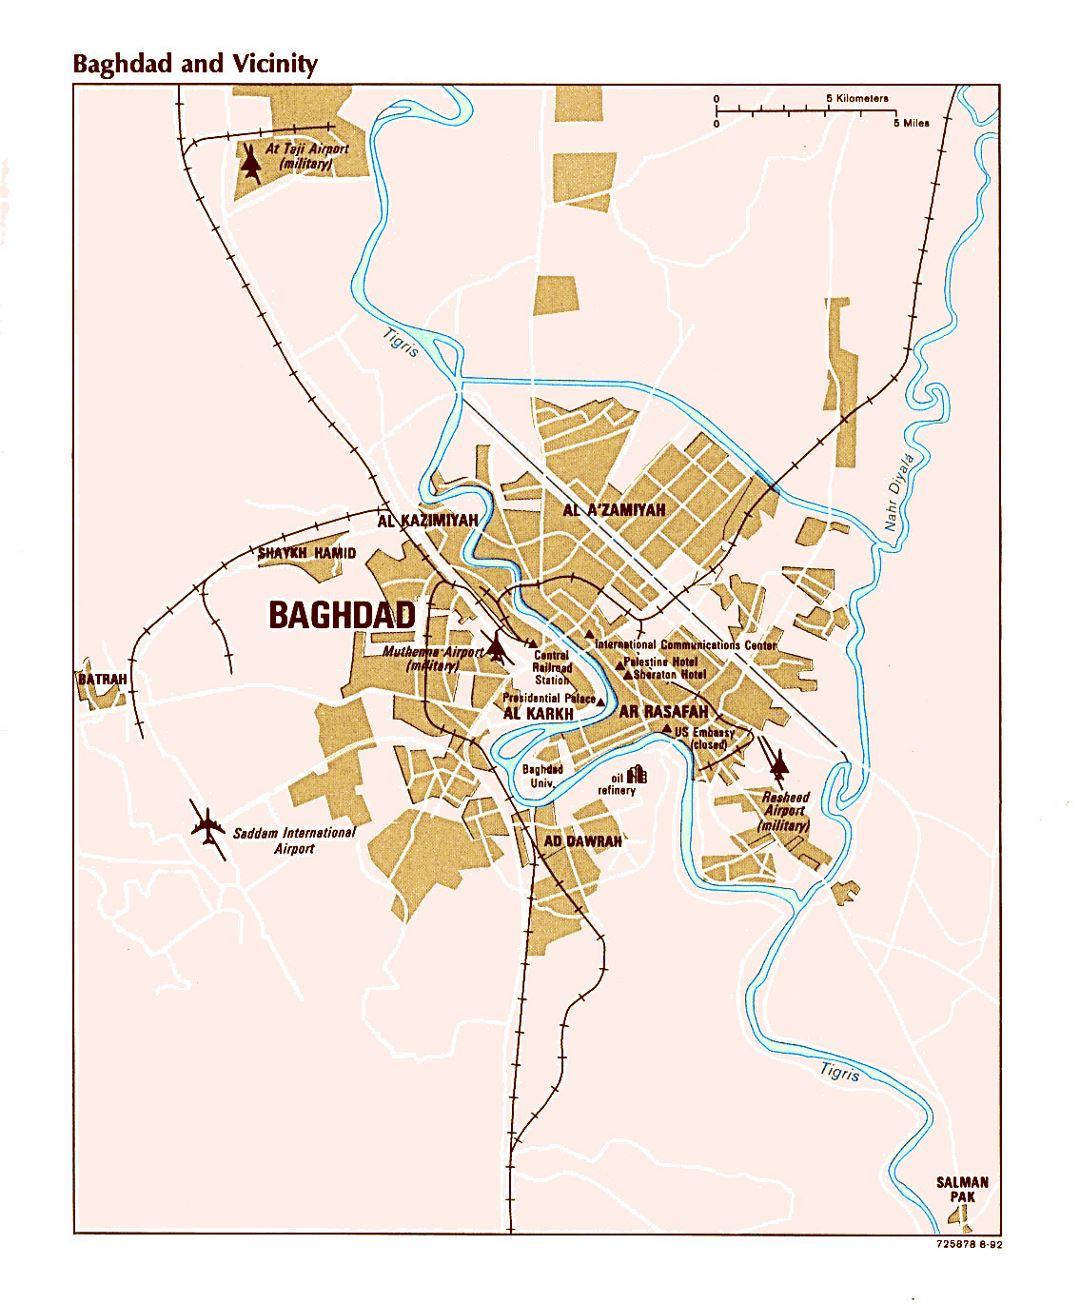 Grande mapa de Bagdad y alrededores con aeropuertos